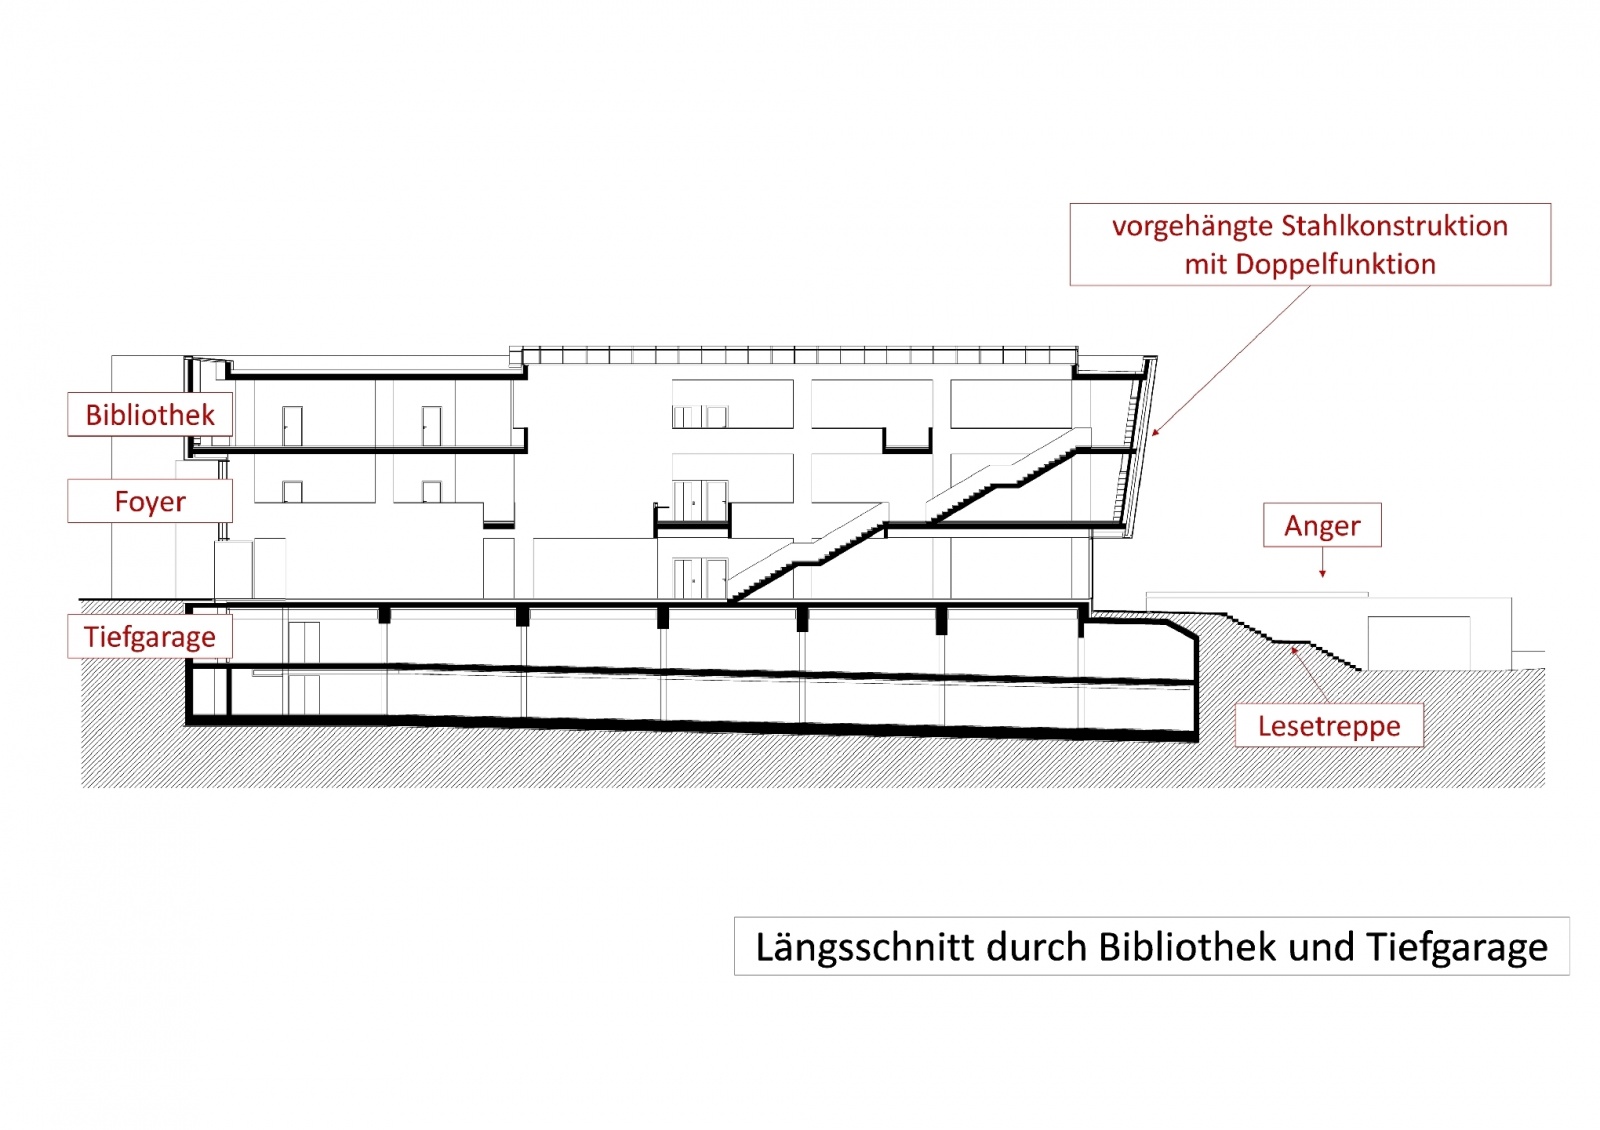 Bürgerhaus mit Stadtbibliothek und Ratssaal, Längsschnitt durch Bibliothek und Tiefgarage, Bild: Ingenieurbüro Dr. Krämer GmbH